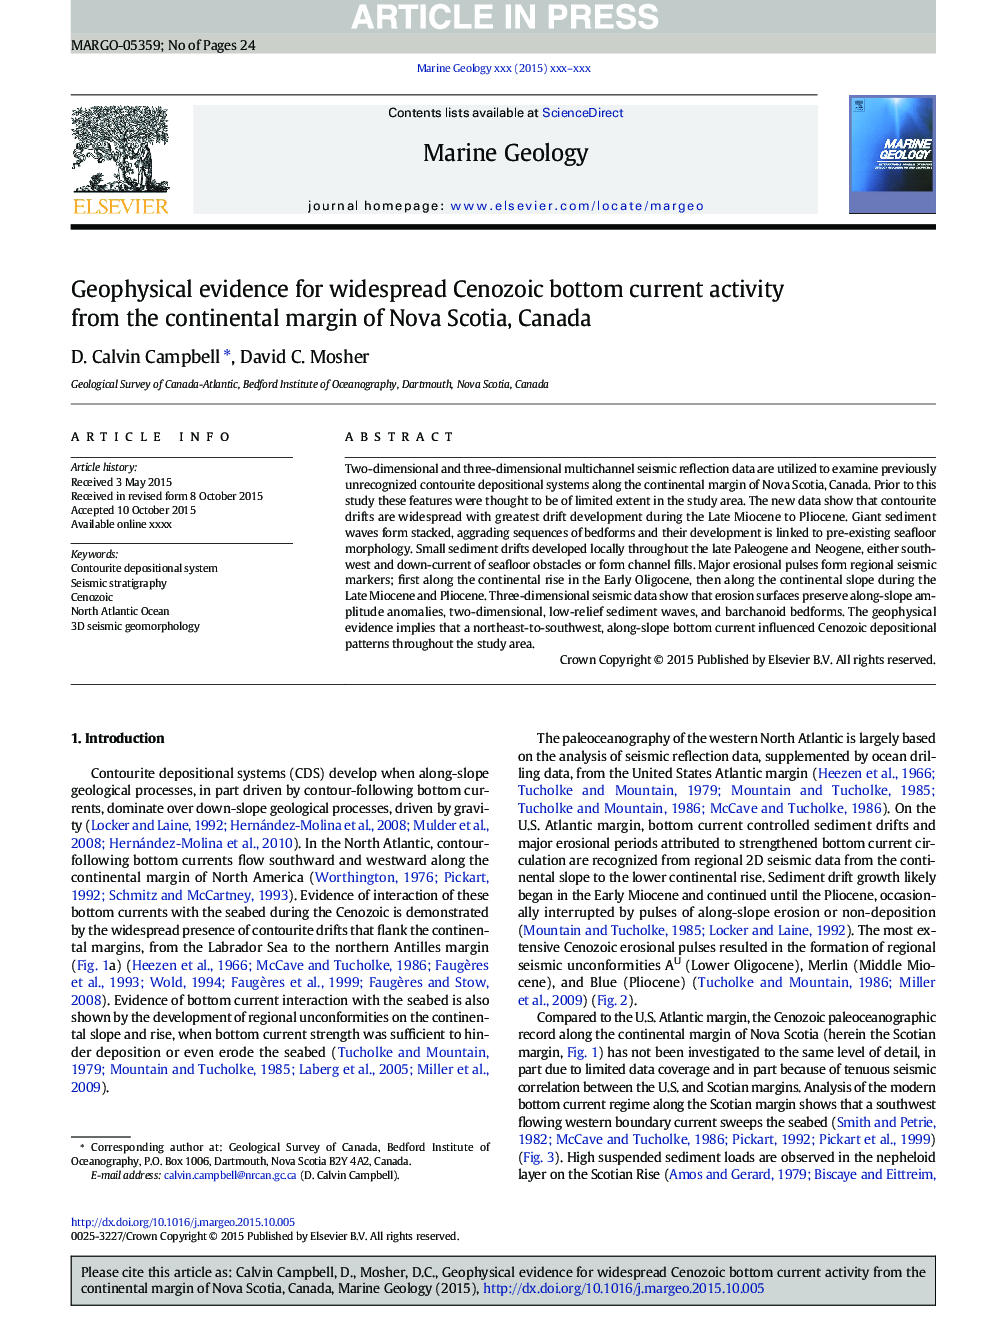 شواهد ژئوفیزیک برای فعالیت فعلی پایین کنووزوئیک از حاشیه قاره نوا اسکوشیا، کانادا 